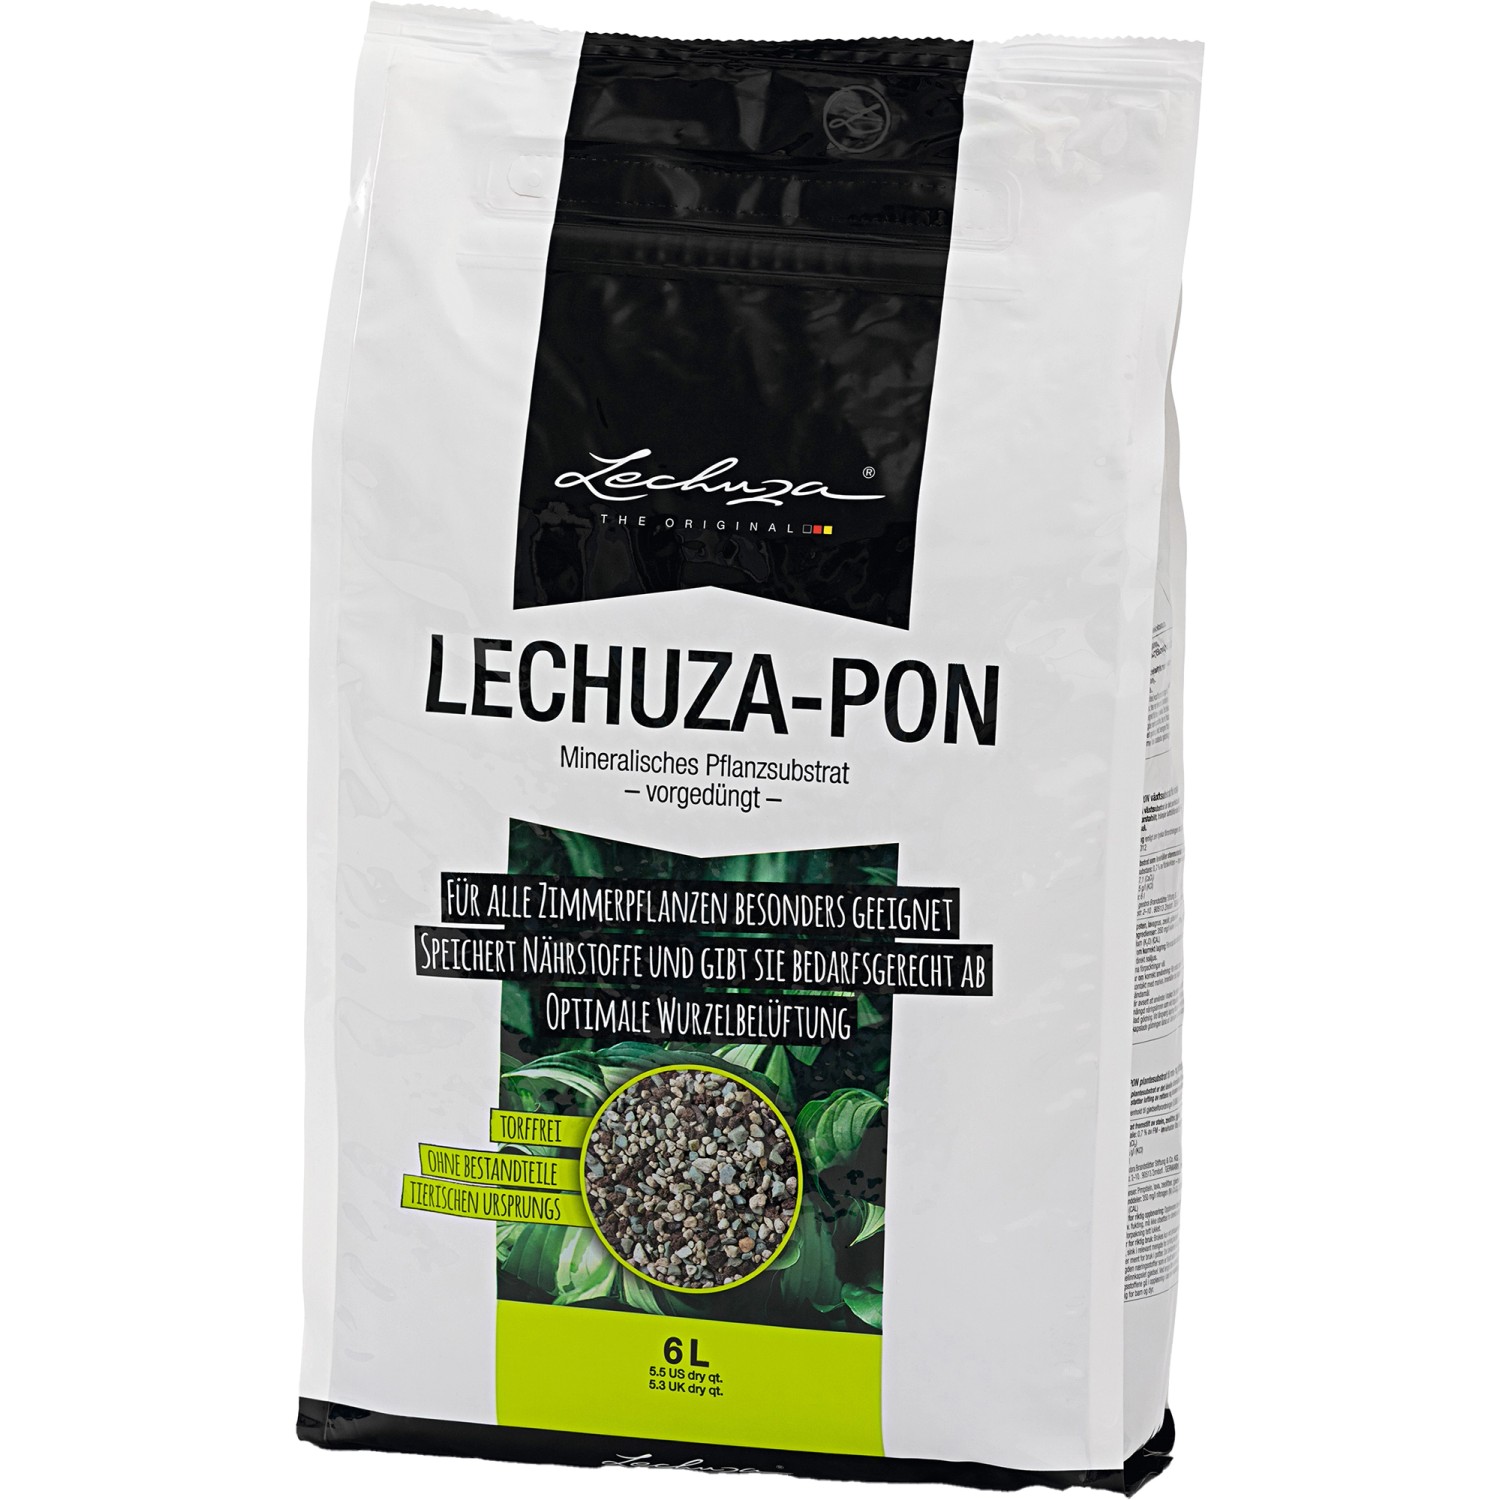 Pflanzsubstrat Lechuza-Pon 6 Liter für Zimmerpflanzen von Lechuza